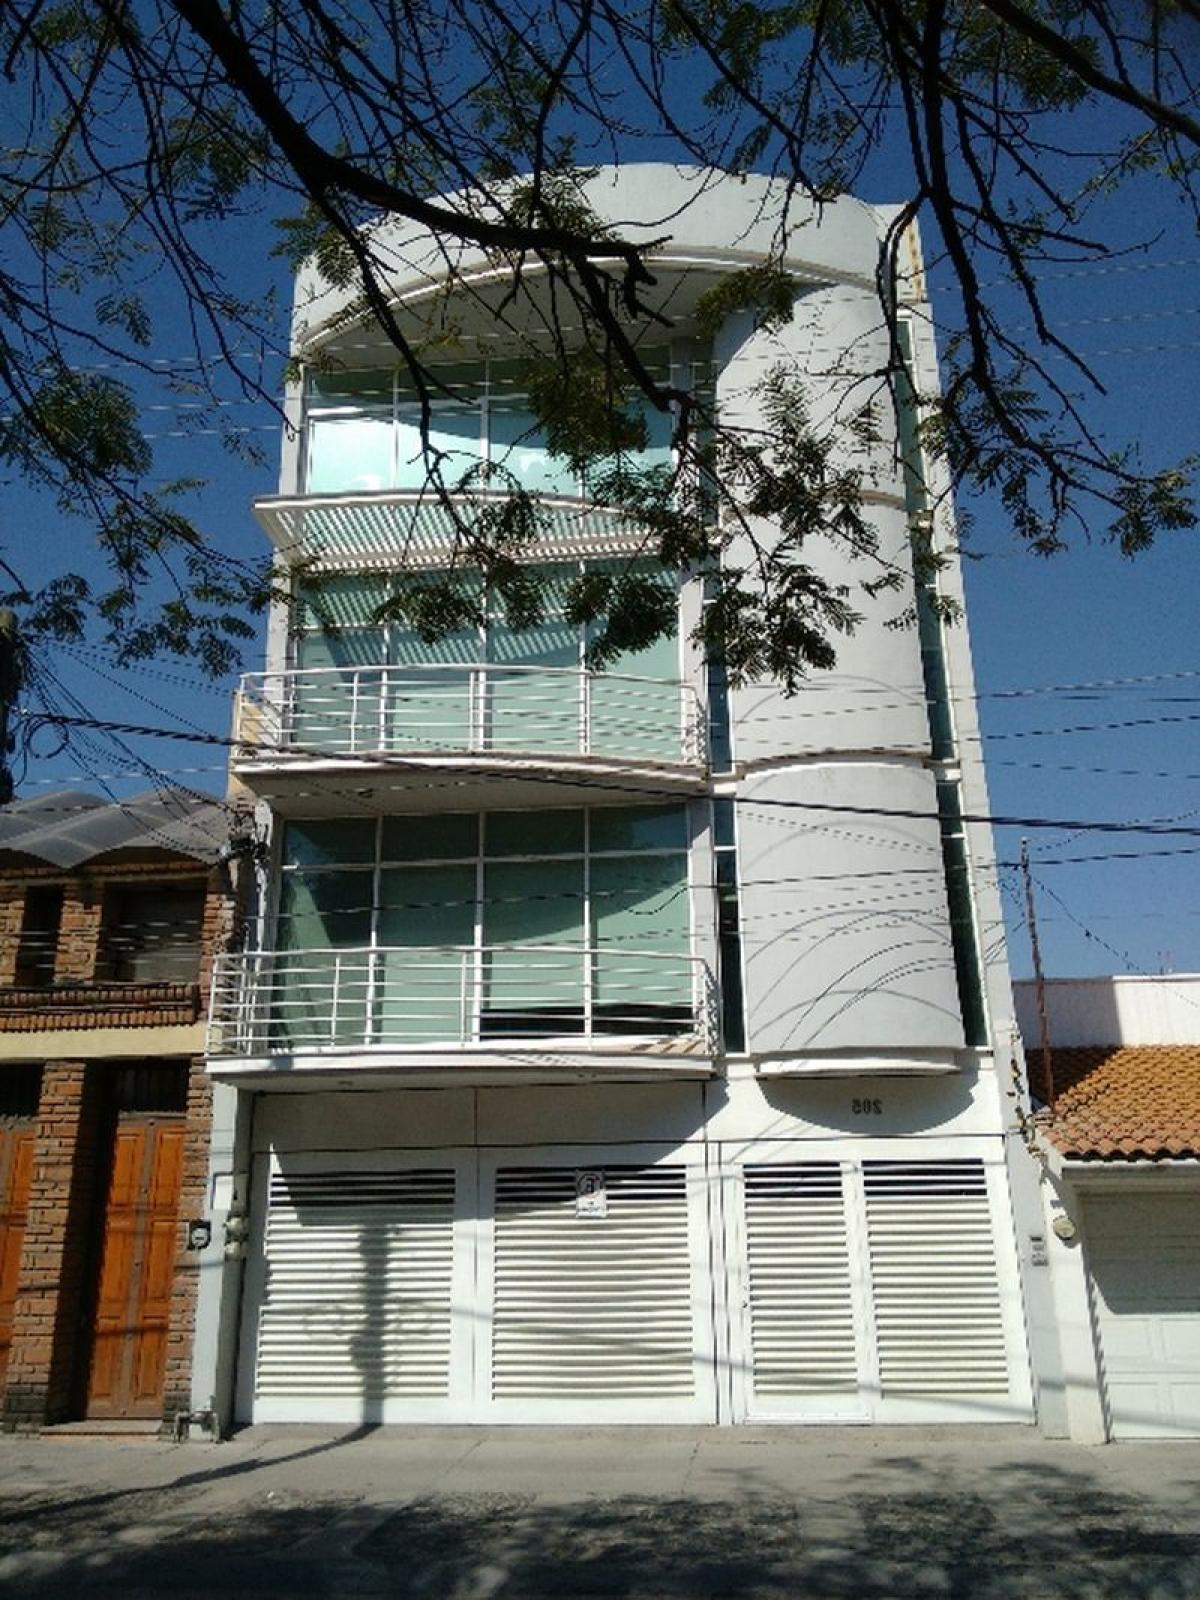 Picture of Apartment Building For Sale in Guanajuato, Guanajuato, Mexico